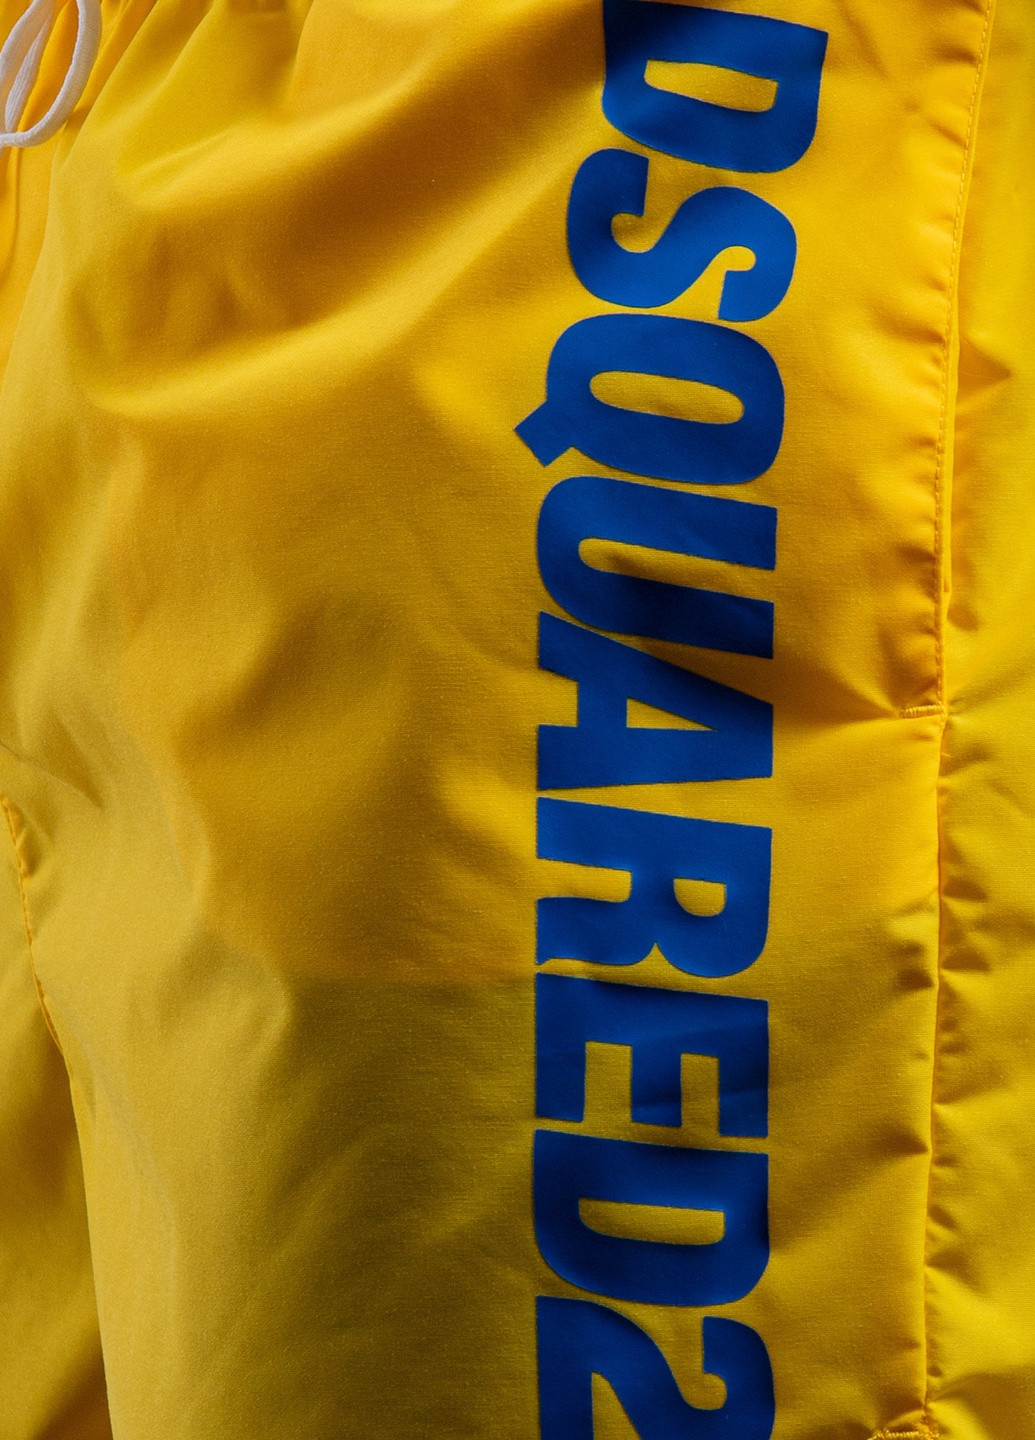 Жовті пляжні шорти з логотипом Dsquared2 (251250436)